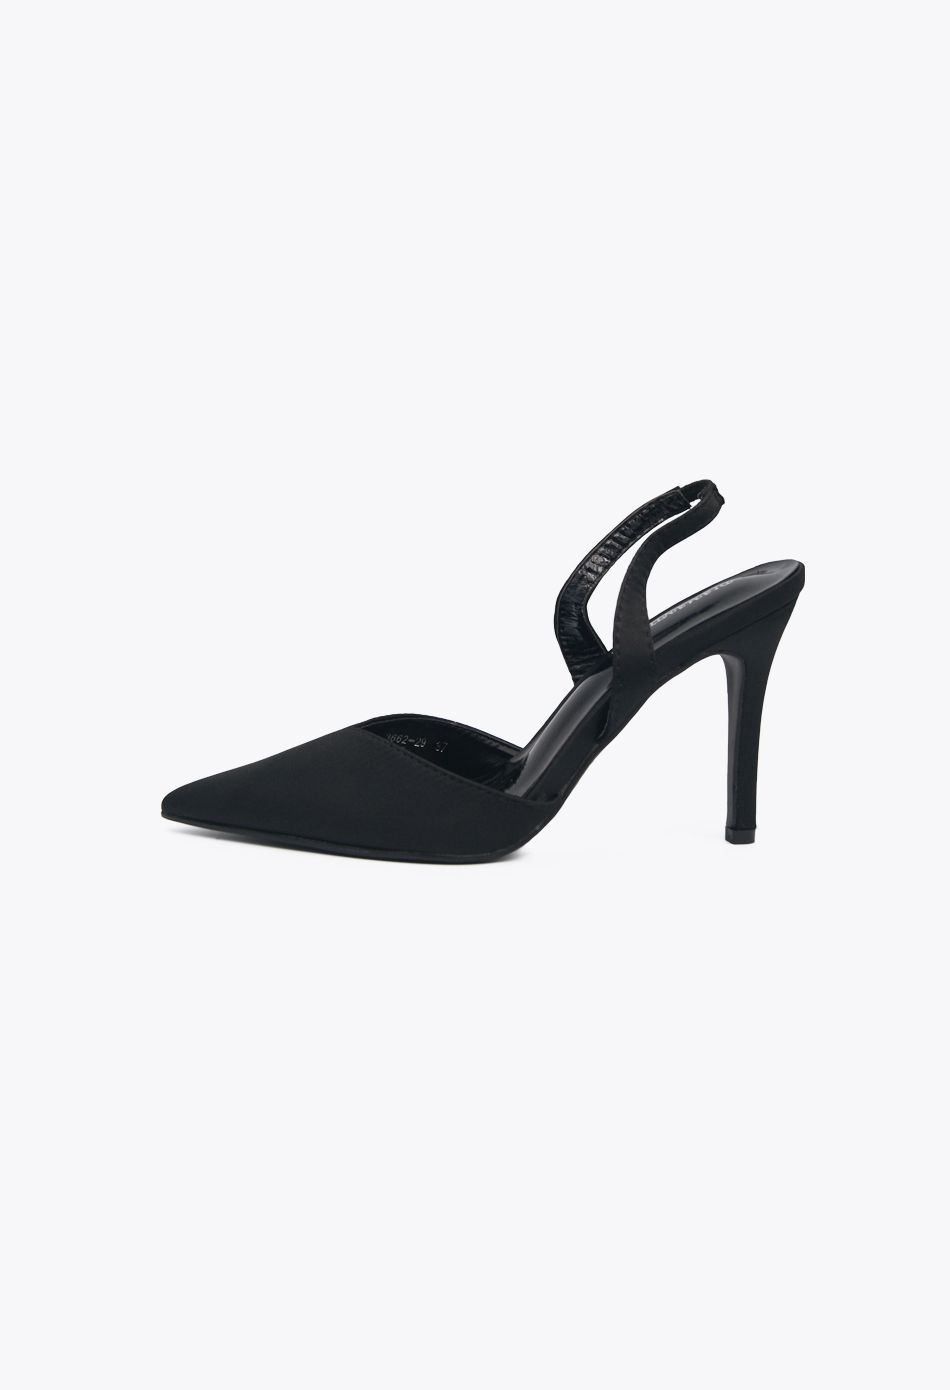 Γόβες Σατέν Open Heel με Λάστιχο Μαύρο / 3662-black Ανοιχτά Παπούτσια joya.gr